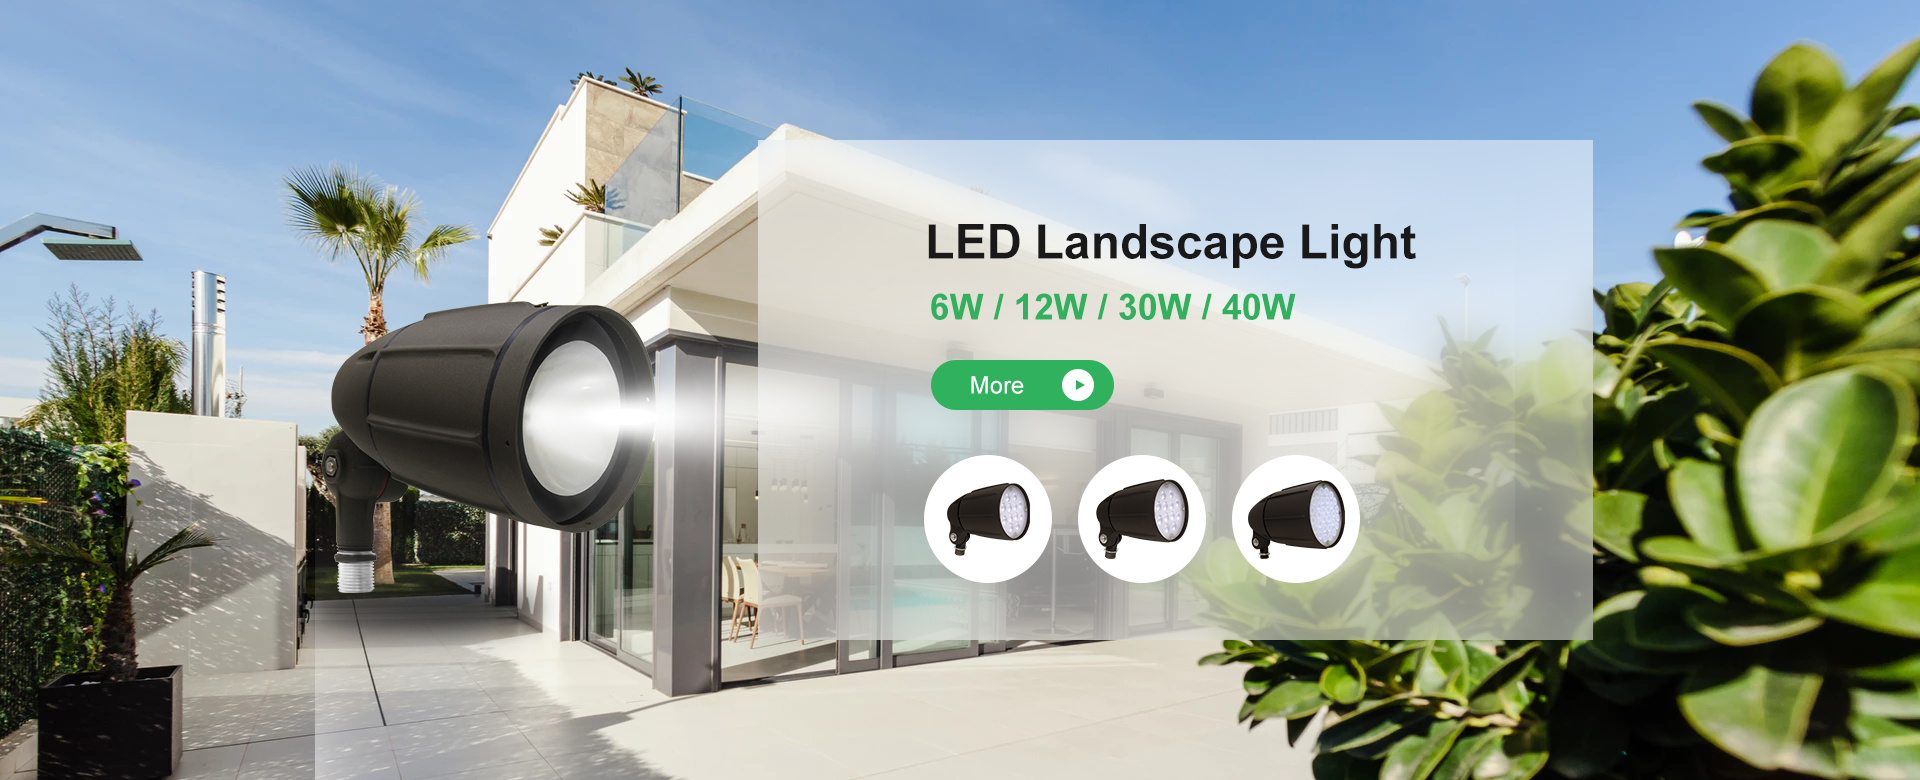 LED landscape light